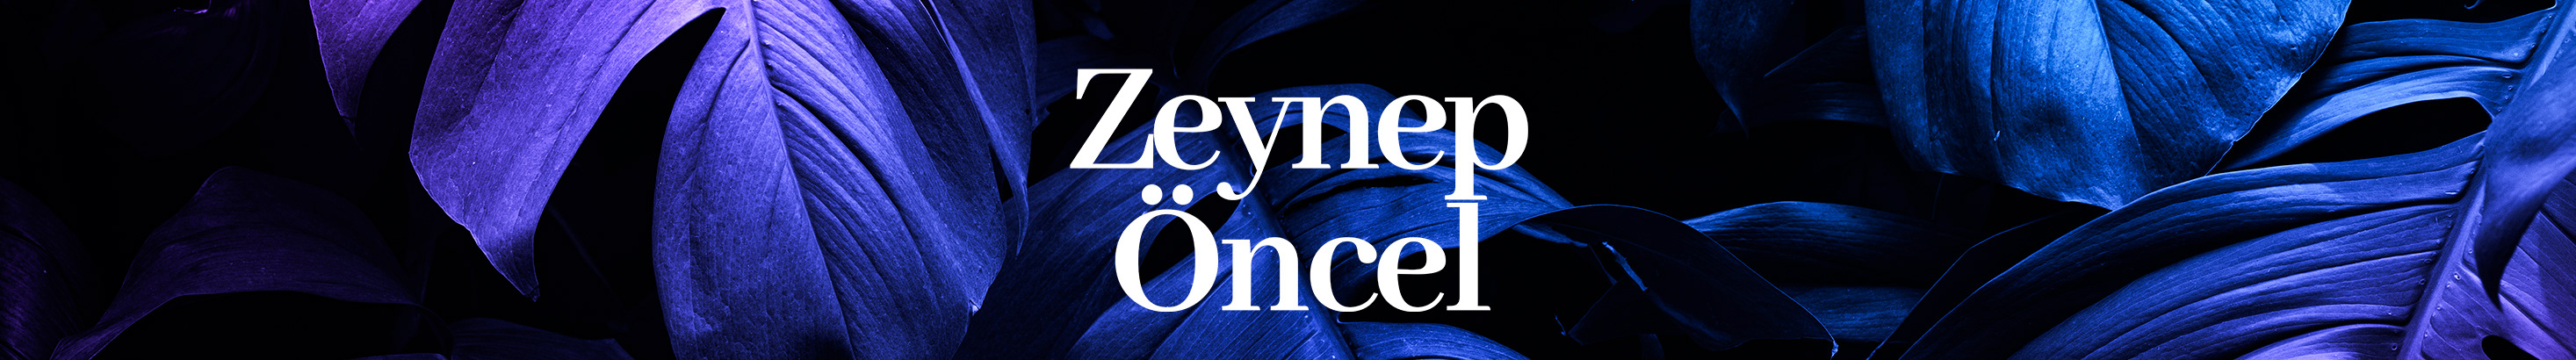 Zeynep Öncel's profile banner